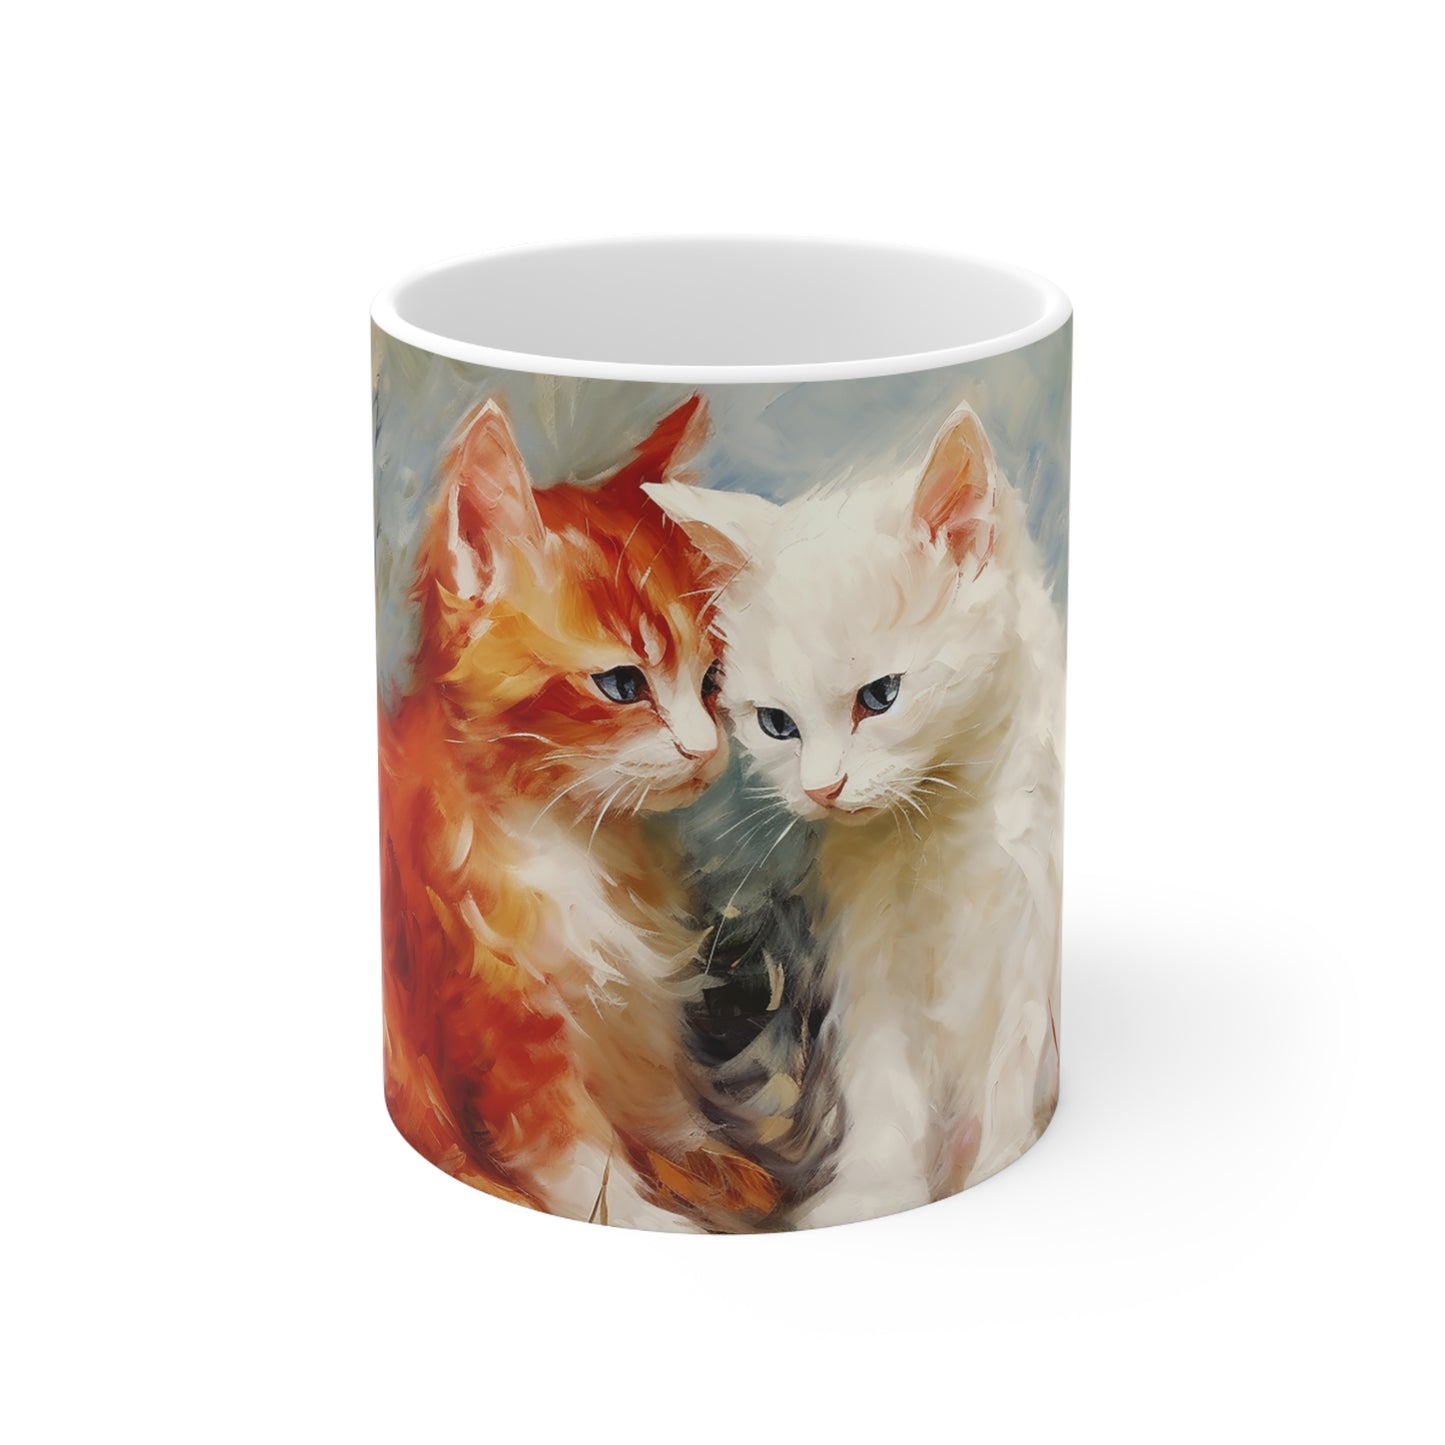 2 Little Kittens Ceramic Mug 11oz